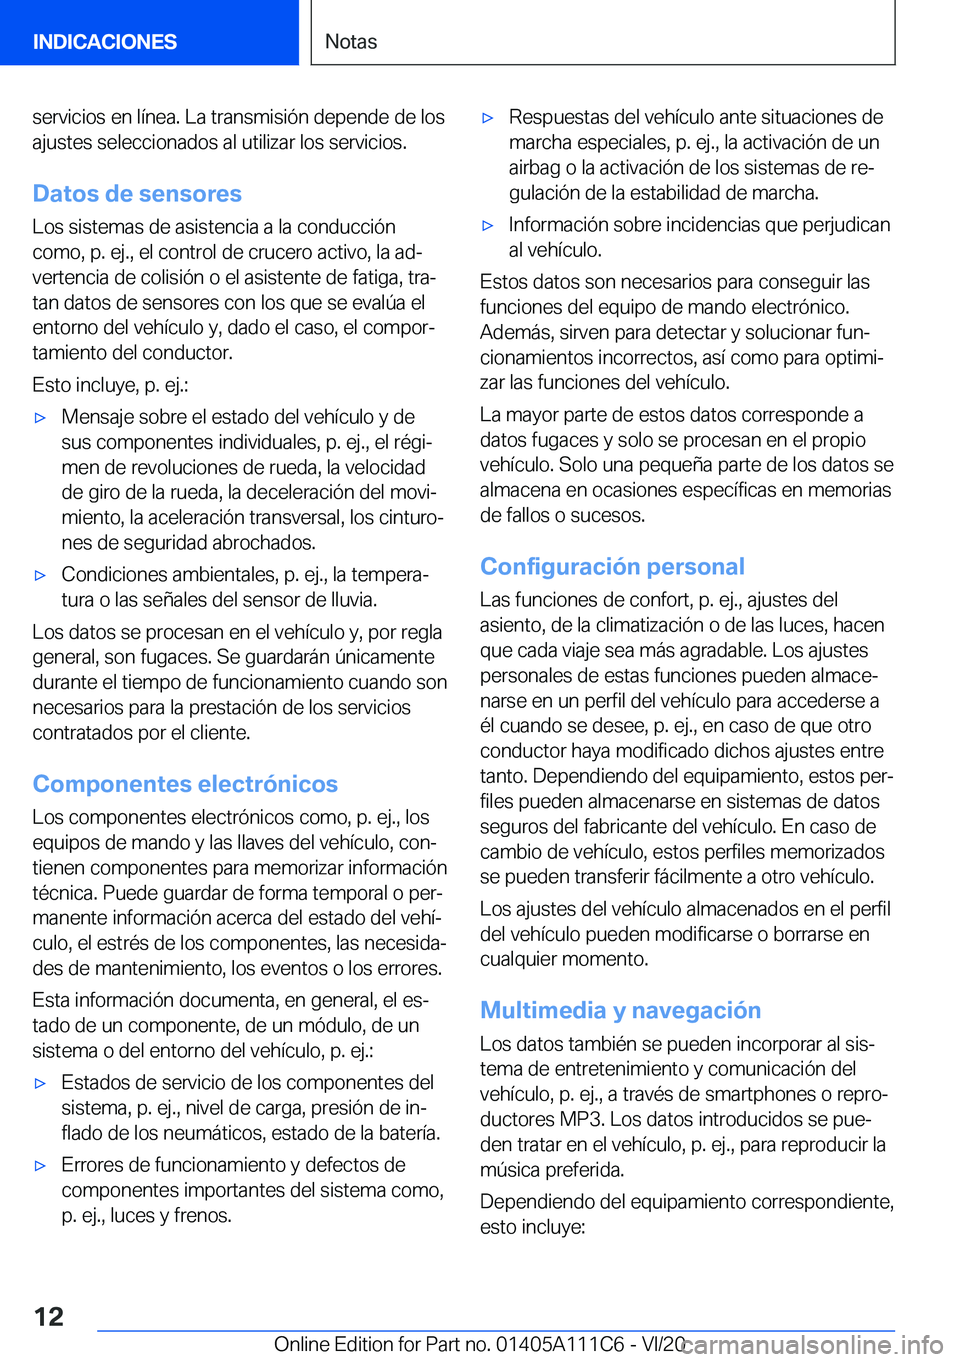 BMW 3 SERIES SEDAN PLUG-IN HYBRID 2021  Manuales de Empleo (in Spanish) �s�e�r�v�i�c�i�o�s��e�n��l�